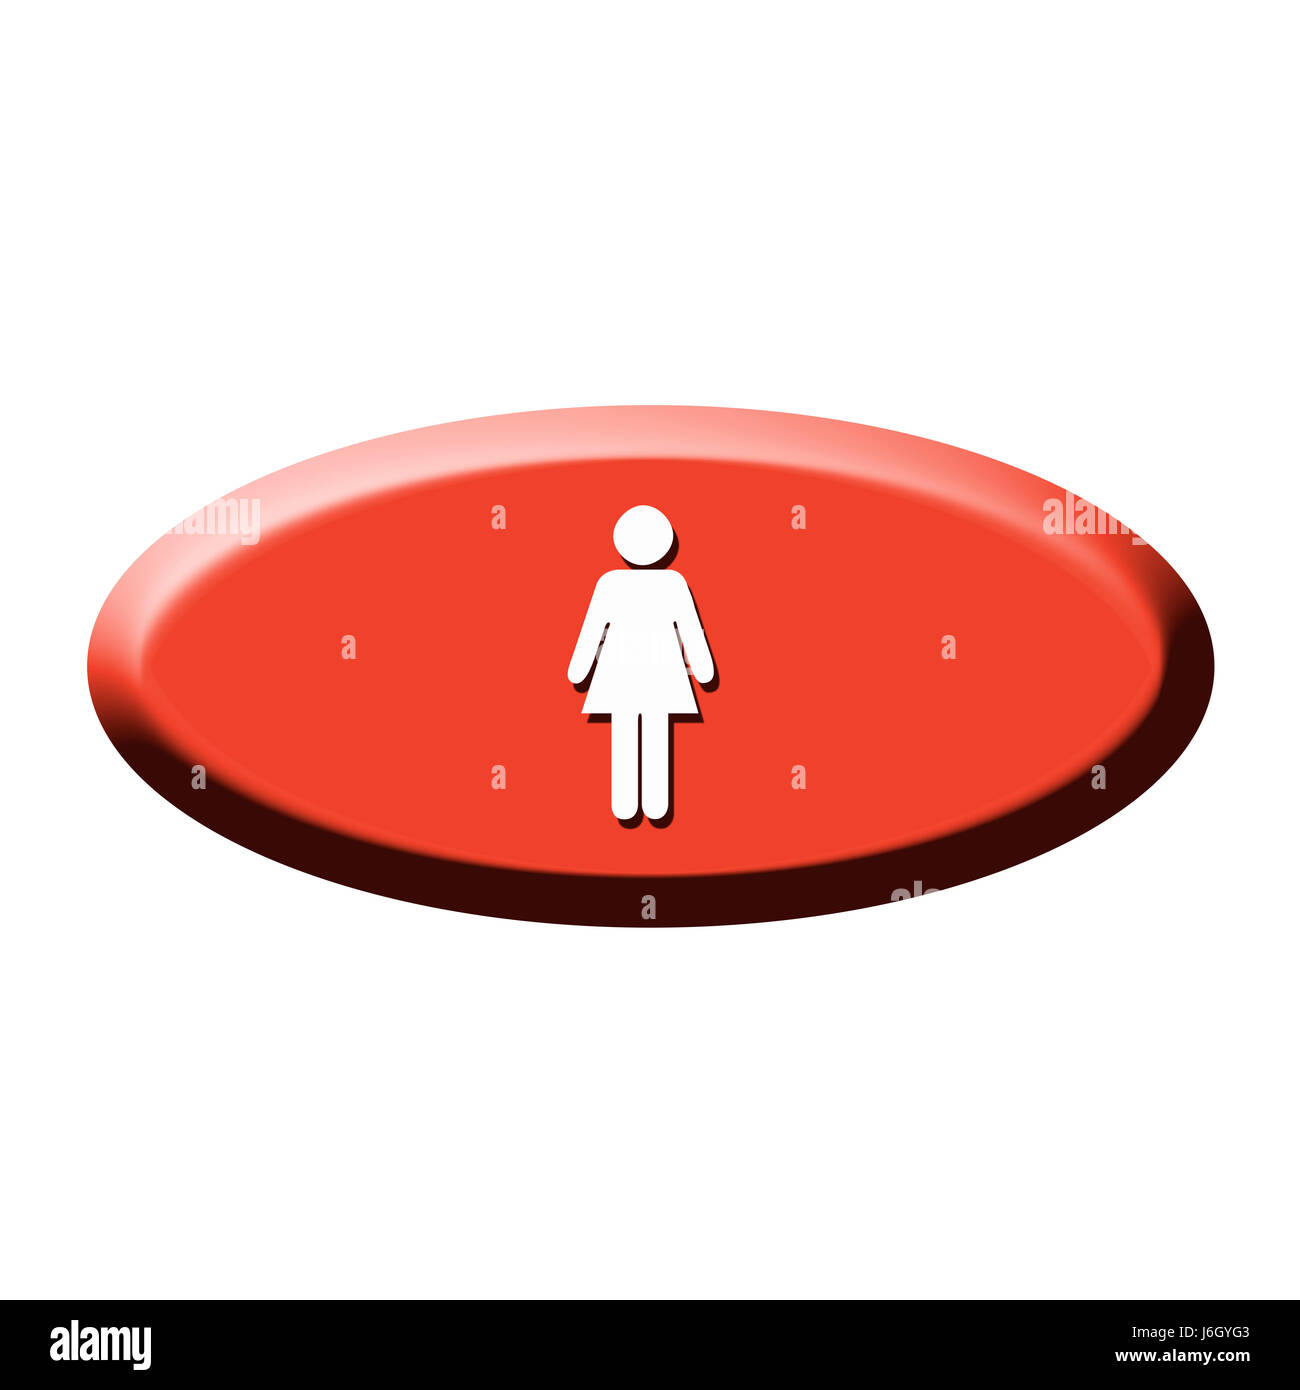 Femme dame dames toilettes en option bouton bouton illustration graphique symbolique Banque D'Images